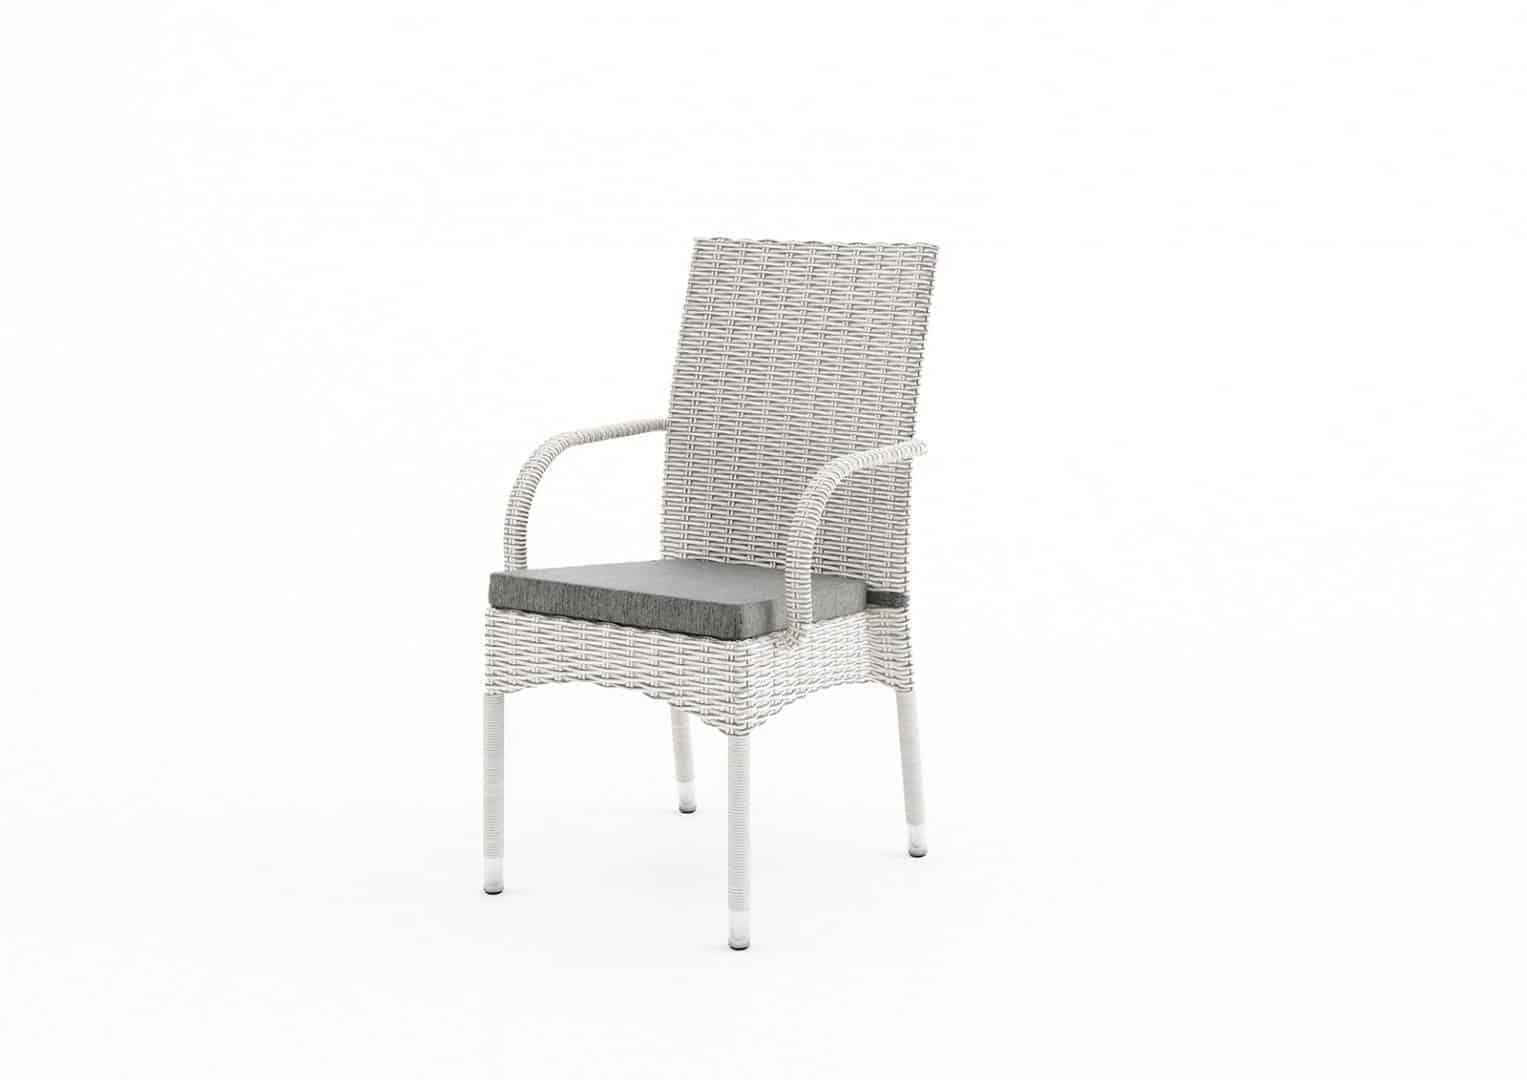 Krzesło ogrodowe TRAMONTO royal białe